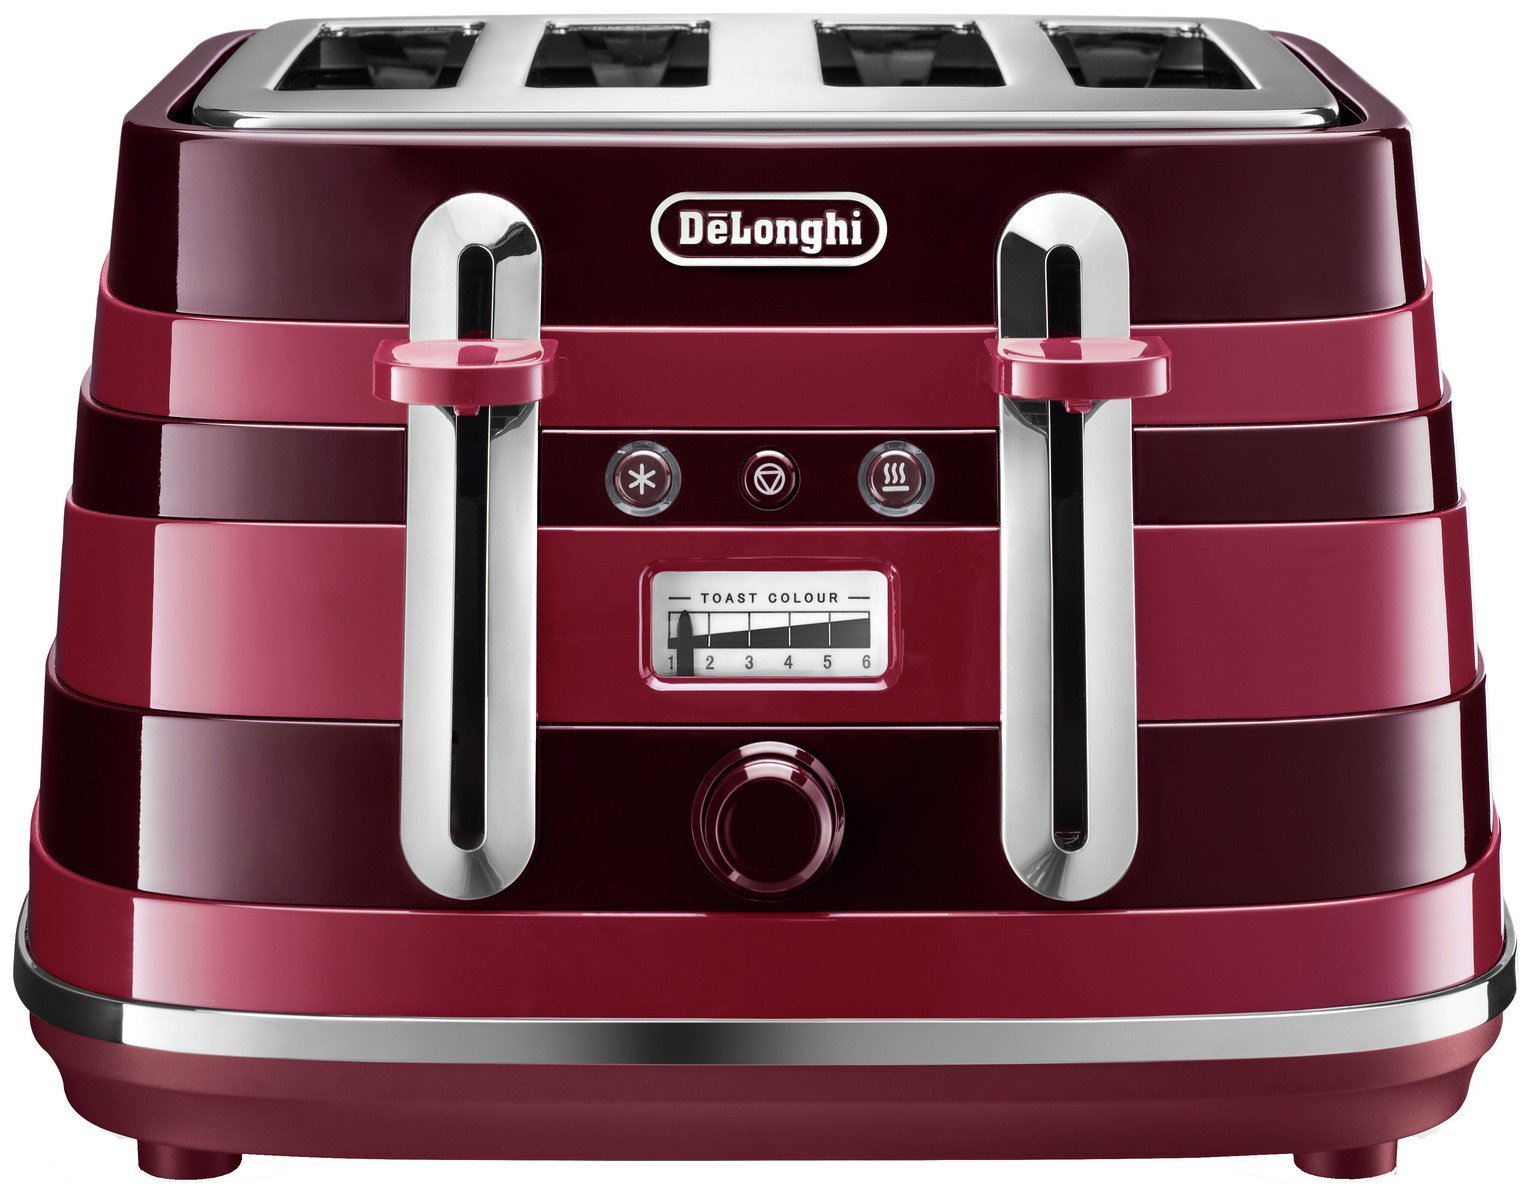 De'Longhi CTA4003R Avvolta 4 Slice Toaster - Red & Black